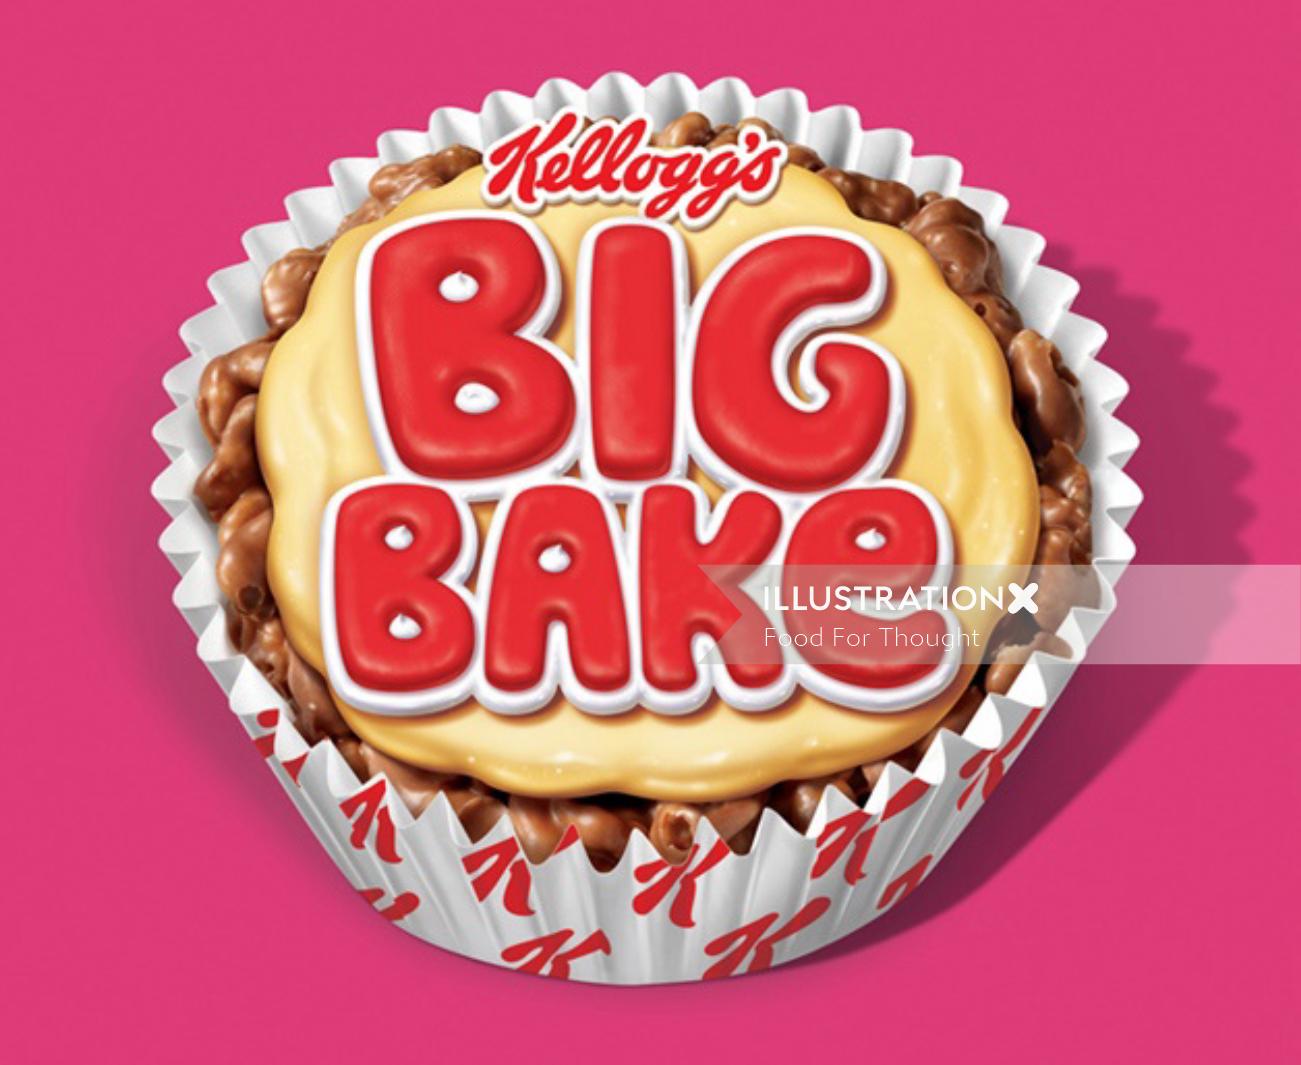 Publicité Big Bake